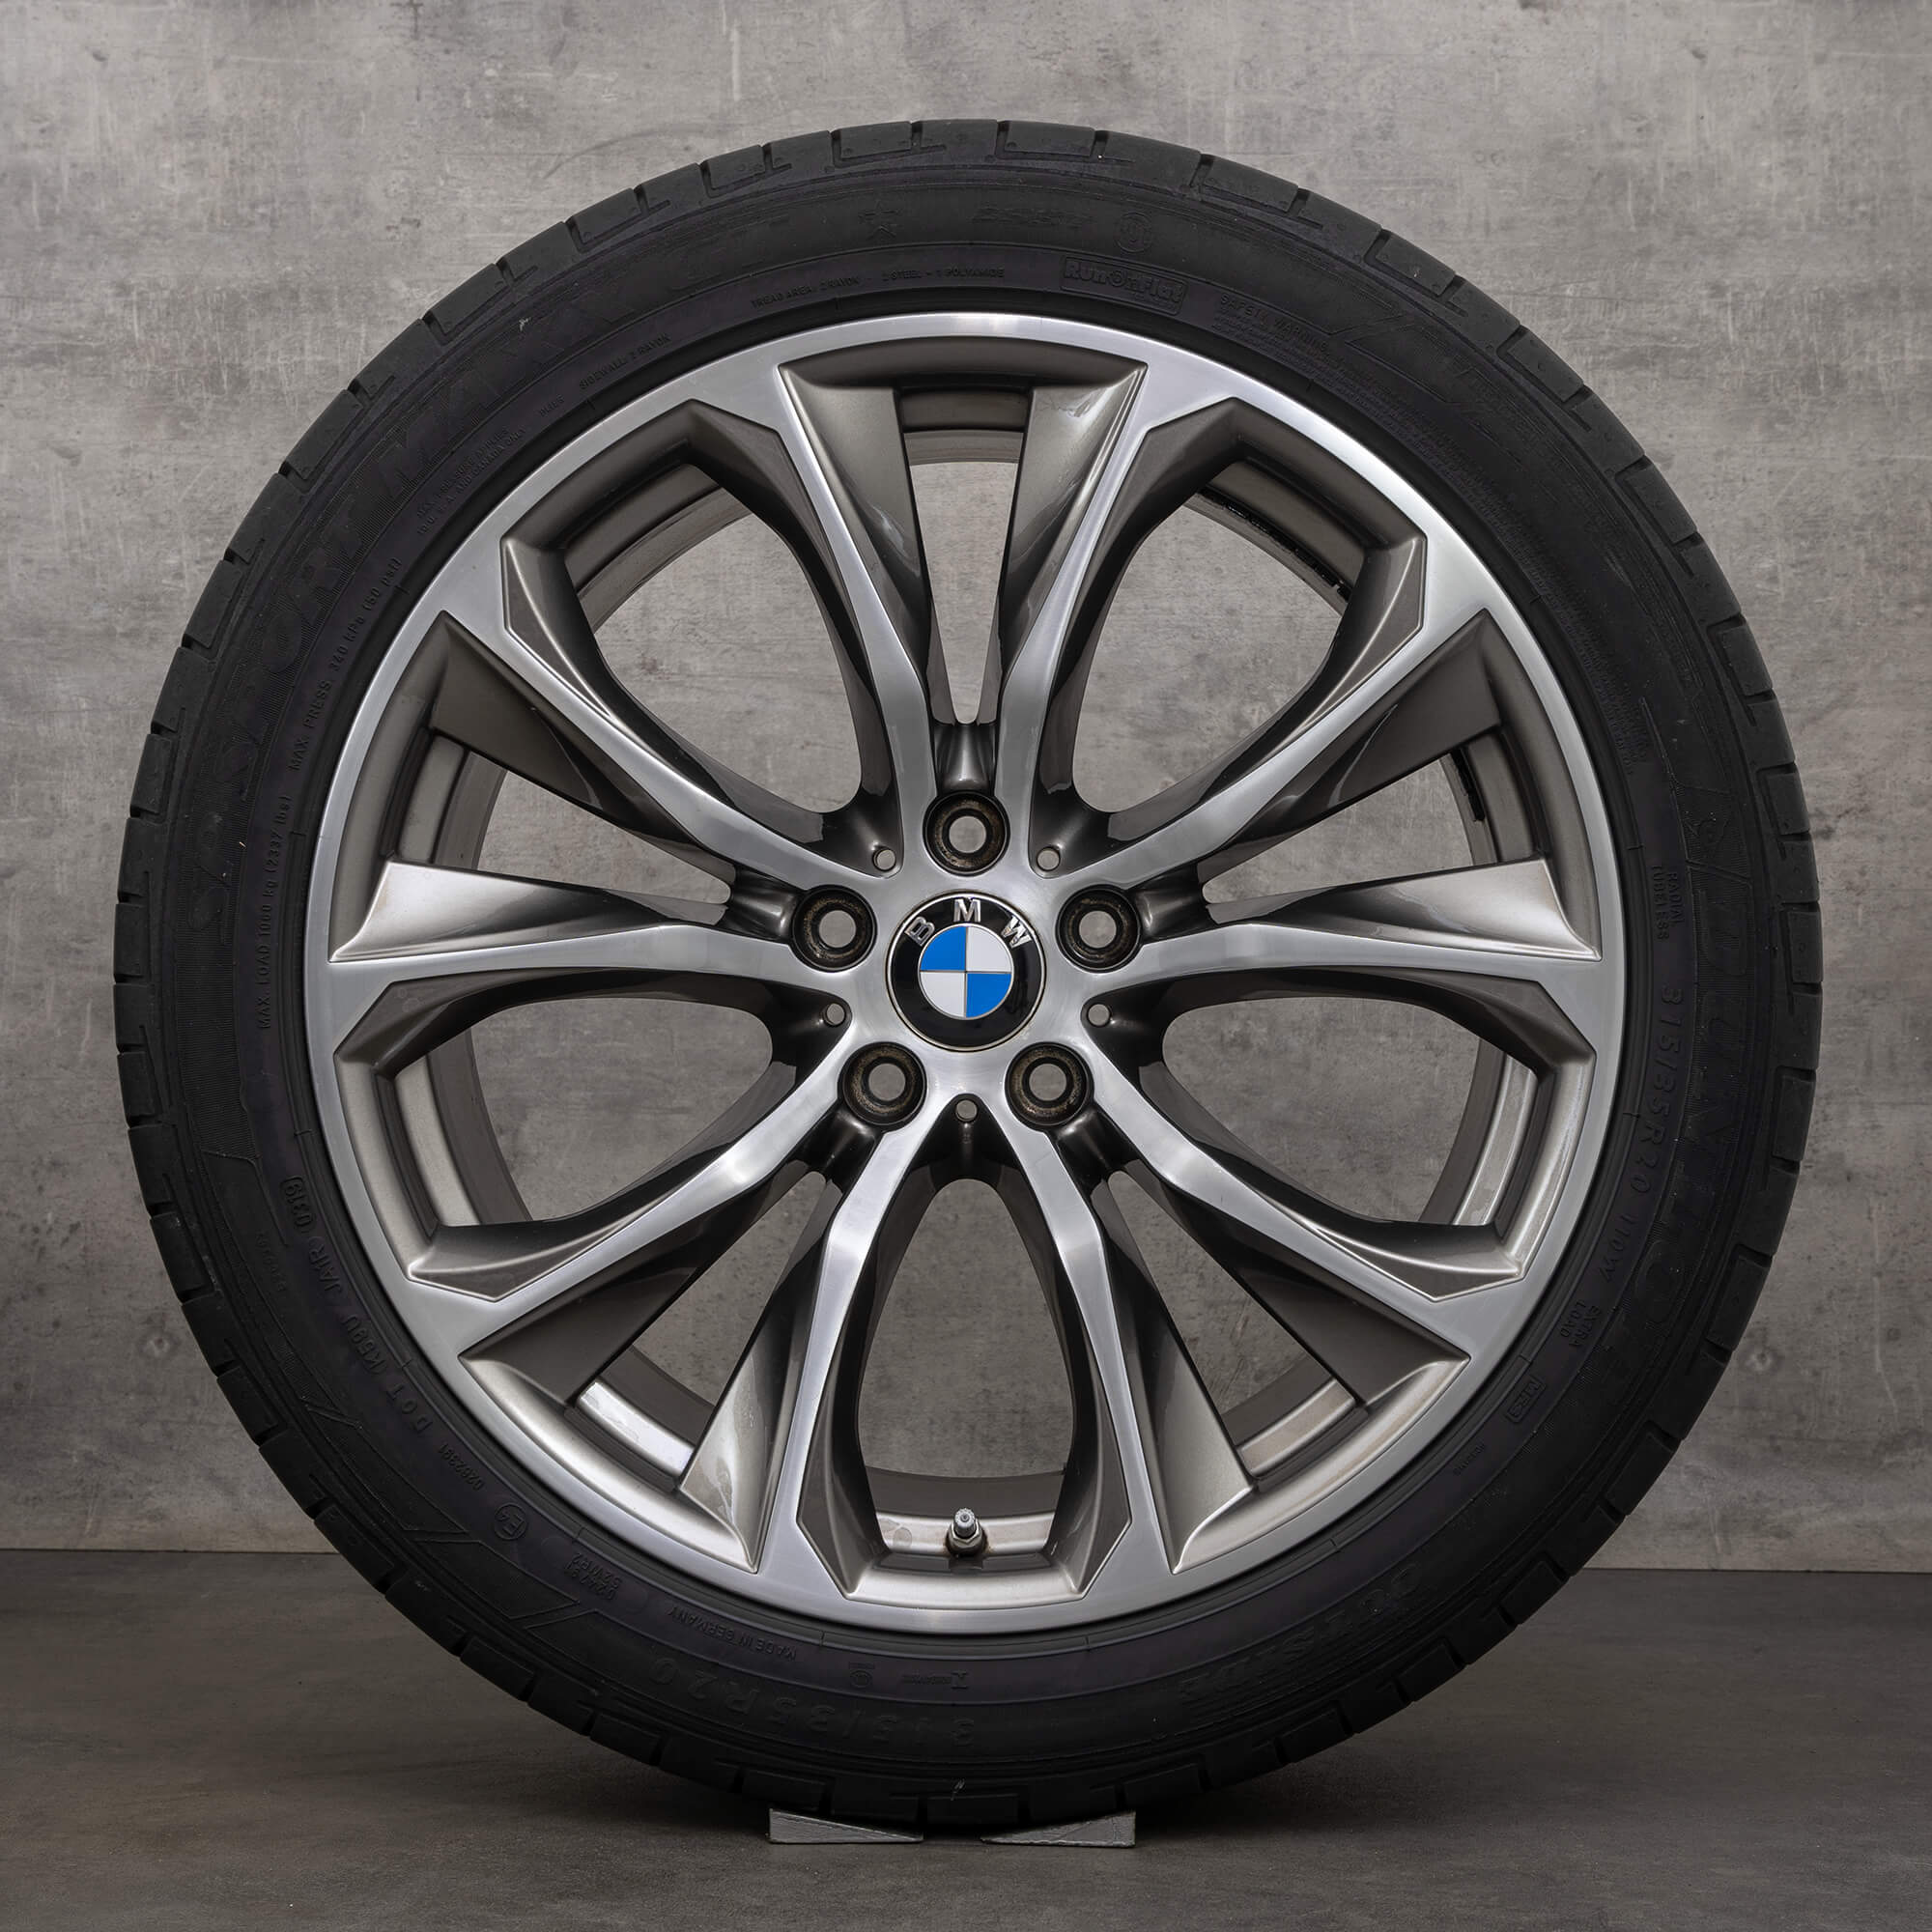 Jantes de alumínio BMW 20 polegadas X5 F15 E70 X6 F16 rodas verão pneus jantes